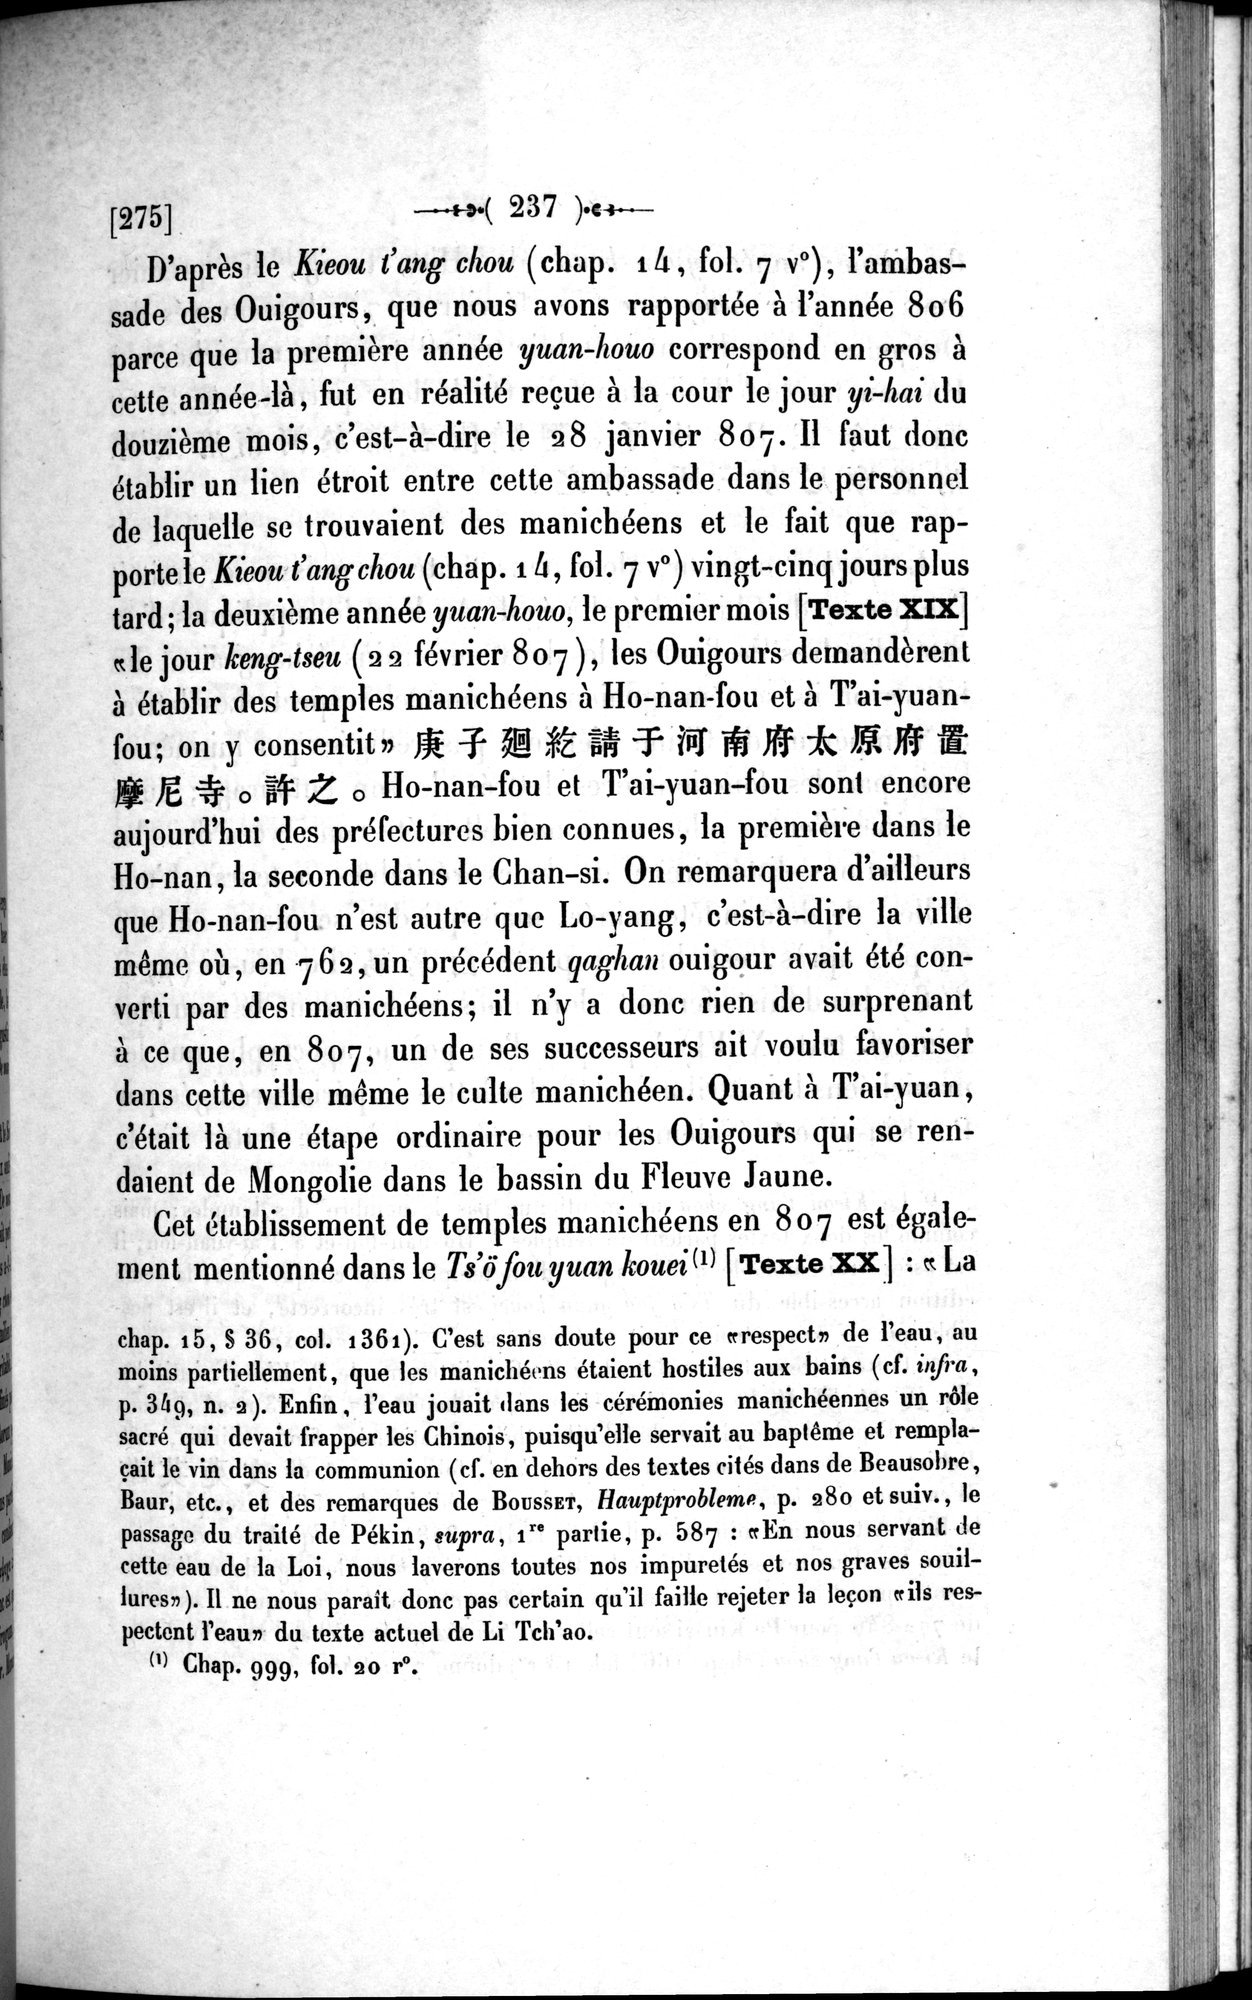 Un traité manichéen retrouvé en Chine : vol.1 / Page 247 (Grayscale High Resolution Image)